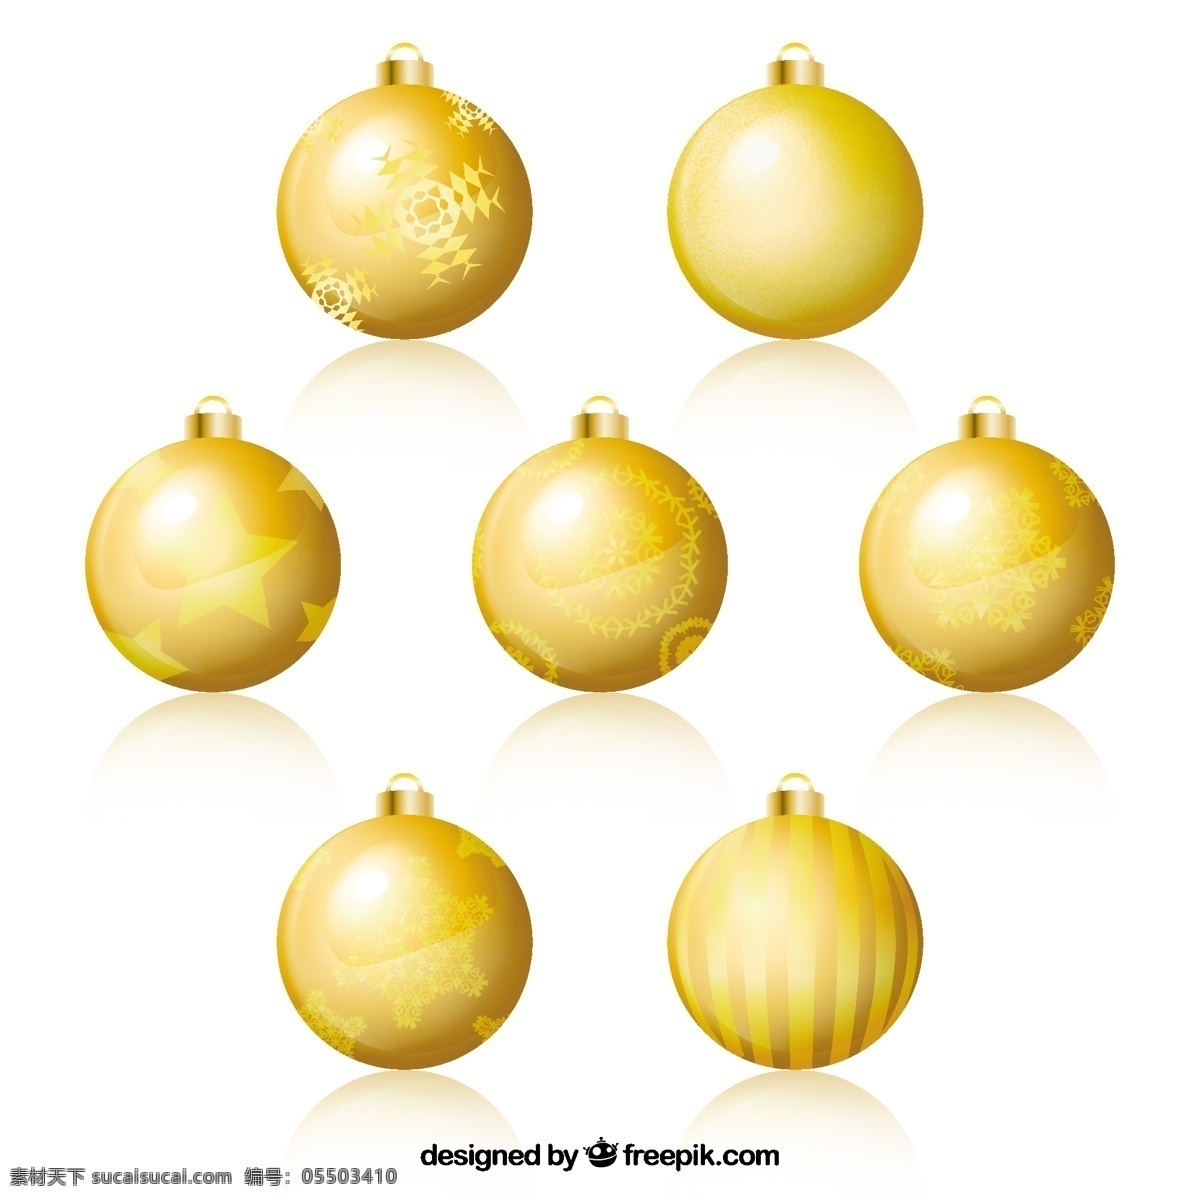 黄金饰品行业 圣诞节 黄金饰品 新的一年 新年快乐 圣诞快乐 冬天 快乐 庆祝节日 新装修 球 金色的 装饰的 一年 节日快乐 圣诞球 圣诞装饰 白色